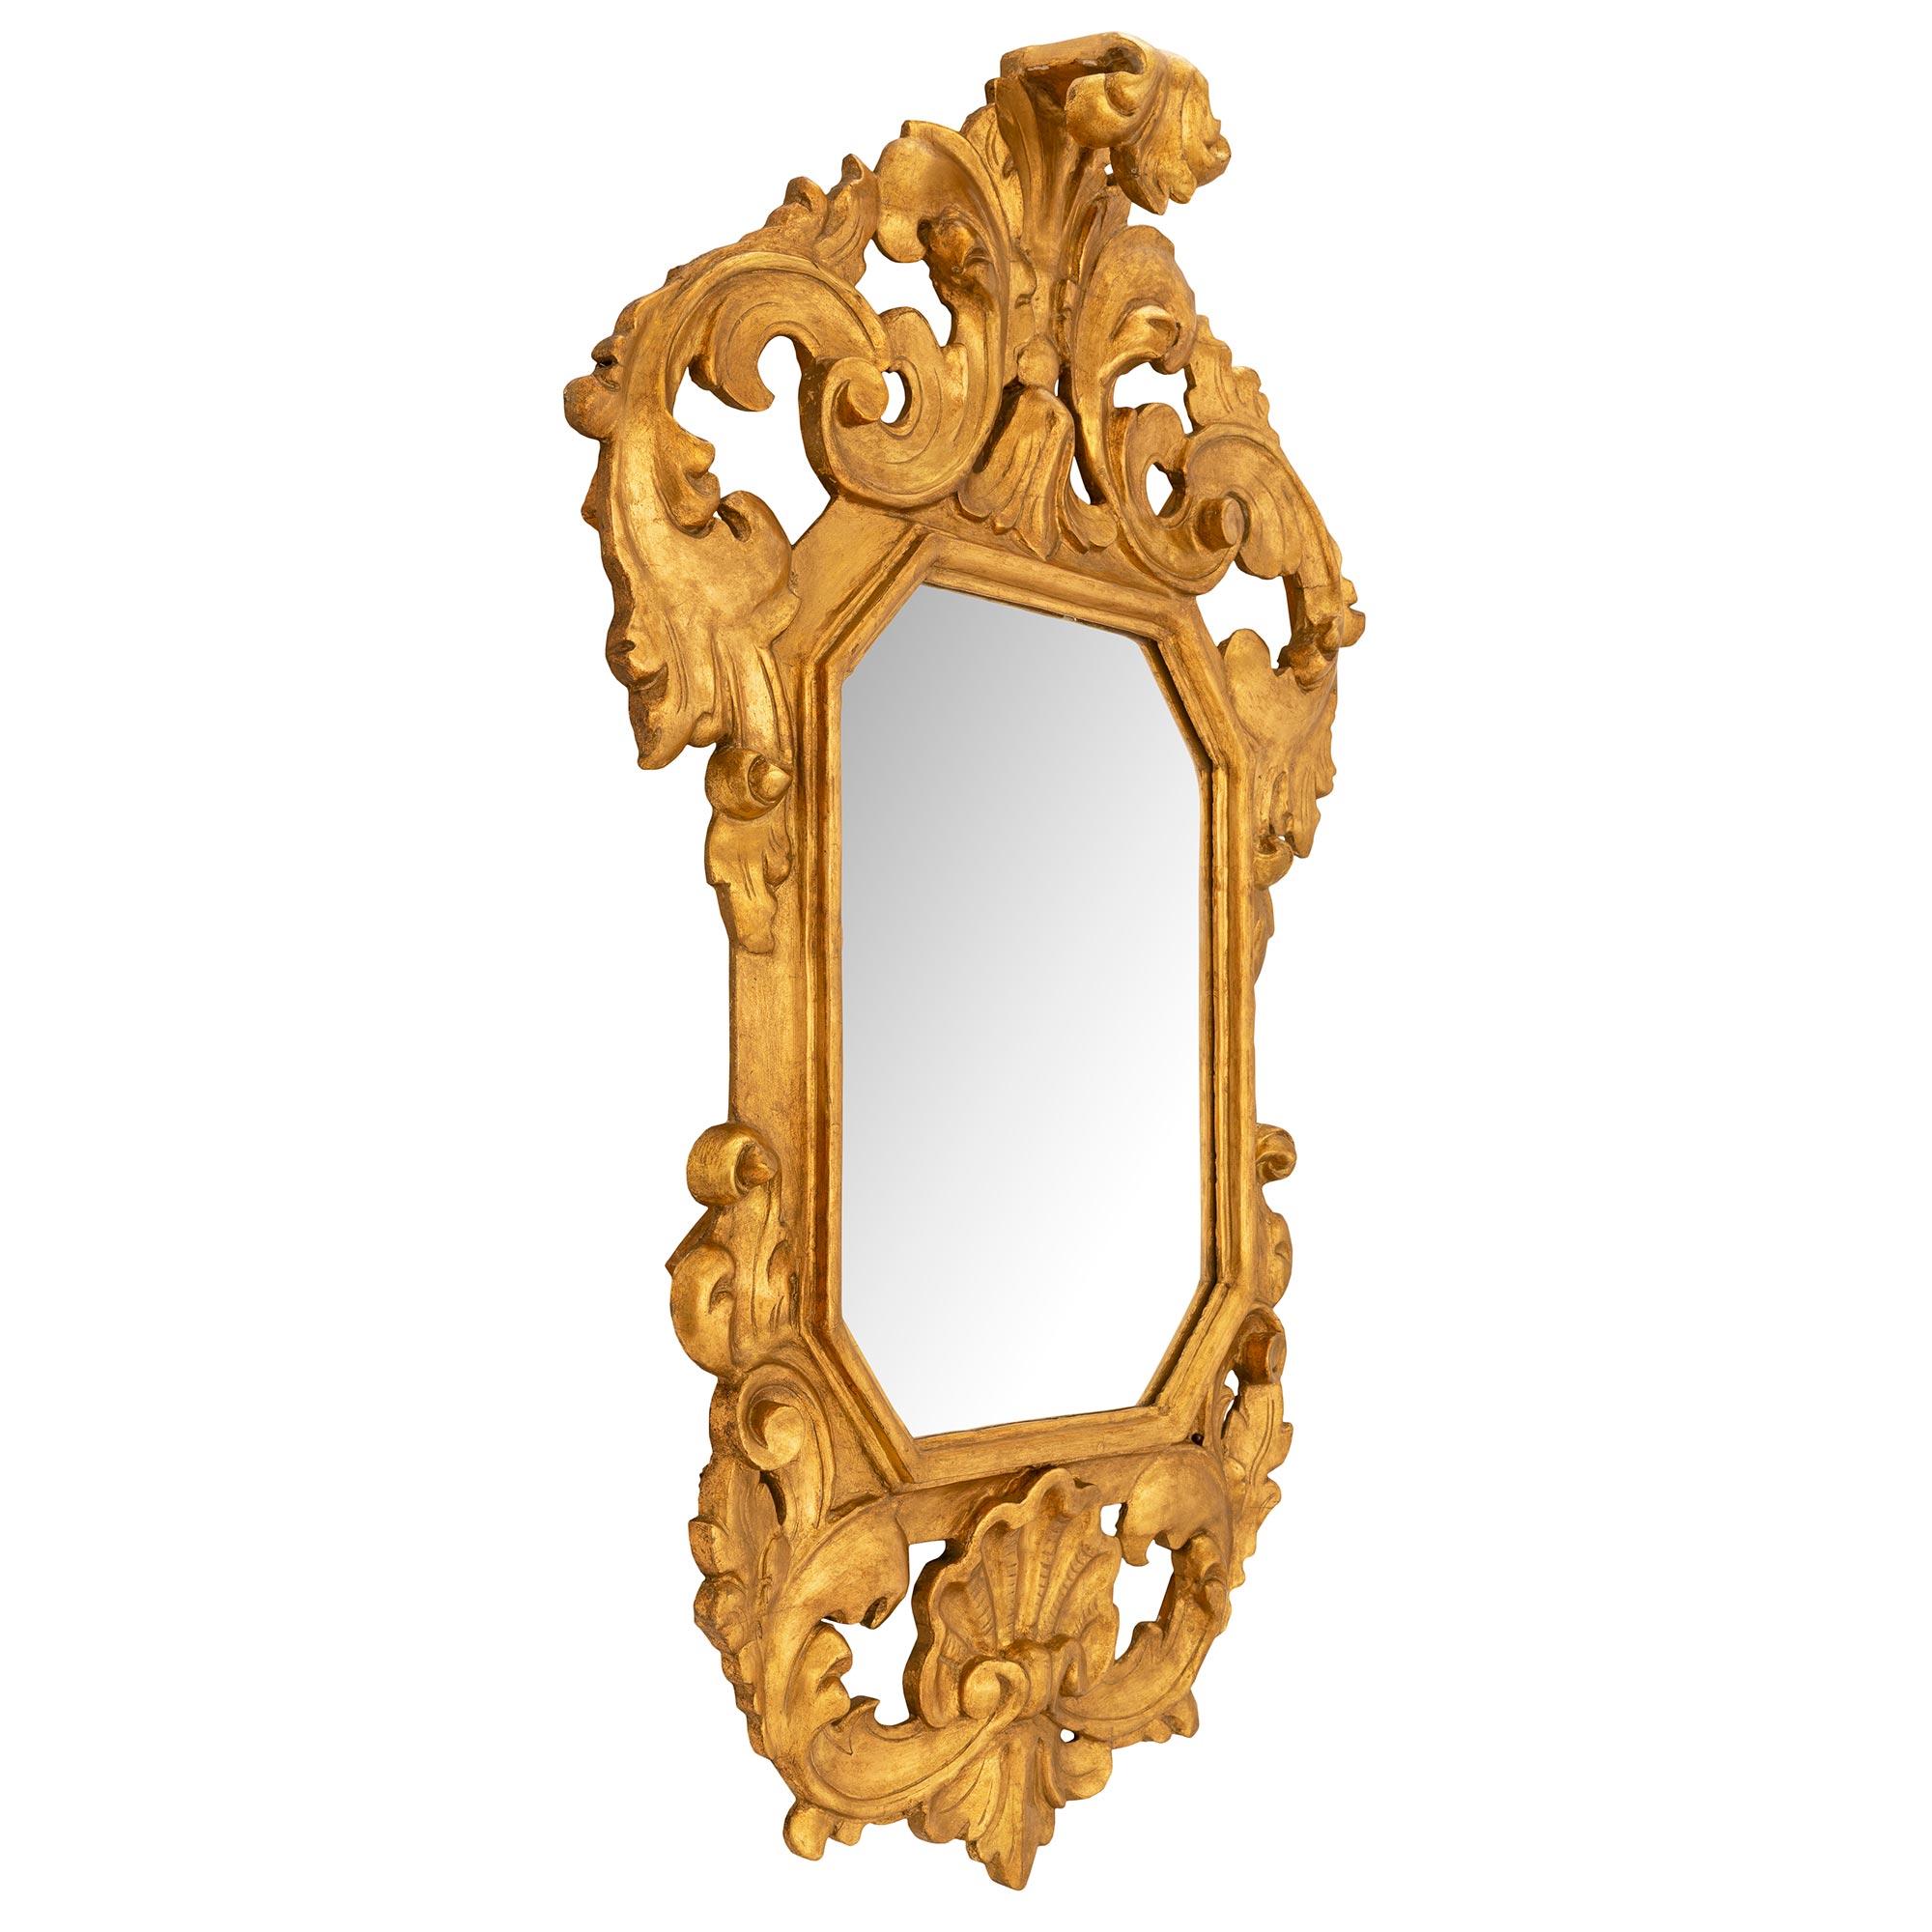 Merveilleux miroir baroque italien du 19ème siècle en bois doré. La plaque de miroir d'origine est encadrée dans une saisissante bordure en bois doré avec un grand cabochon de coquillage en bas, flanqué de mouvements de feuillage défilant sur le